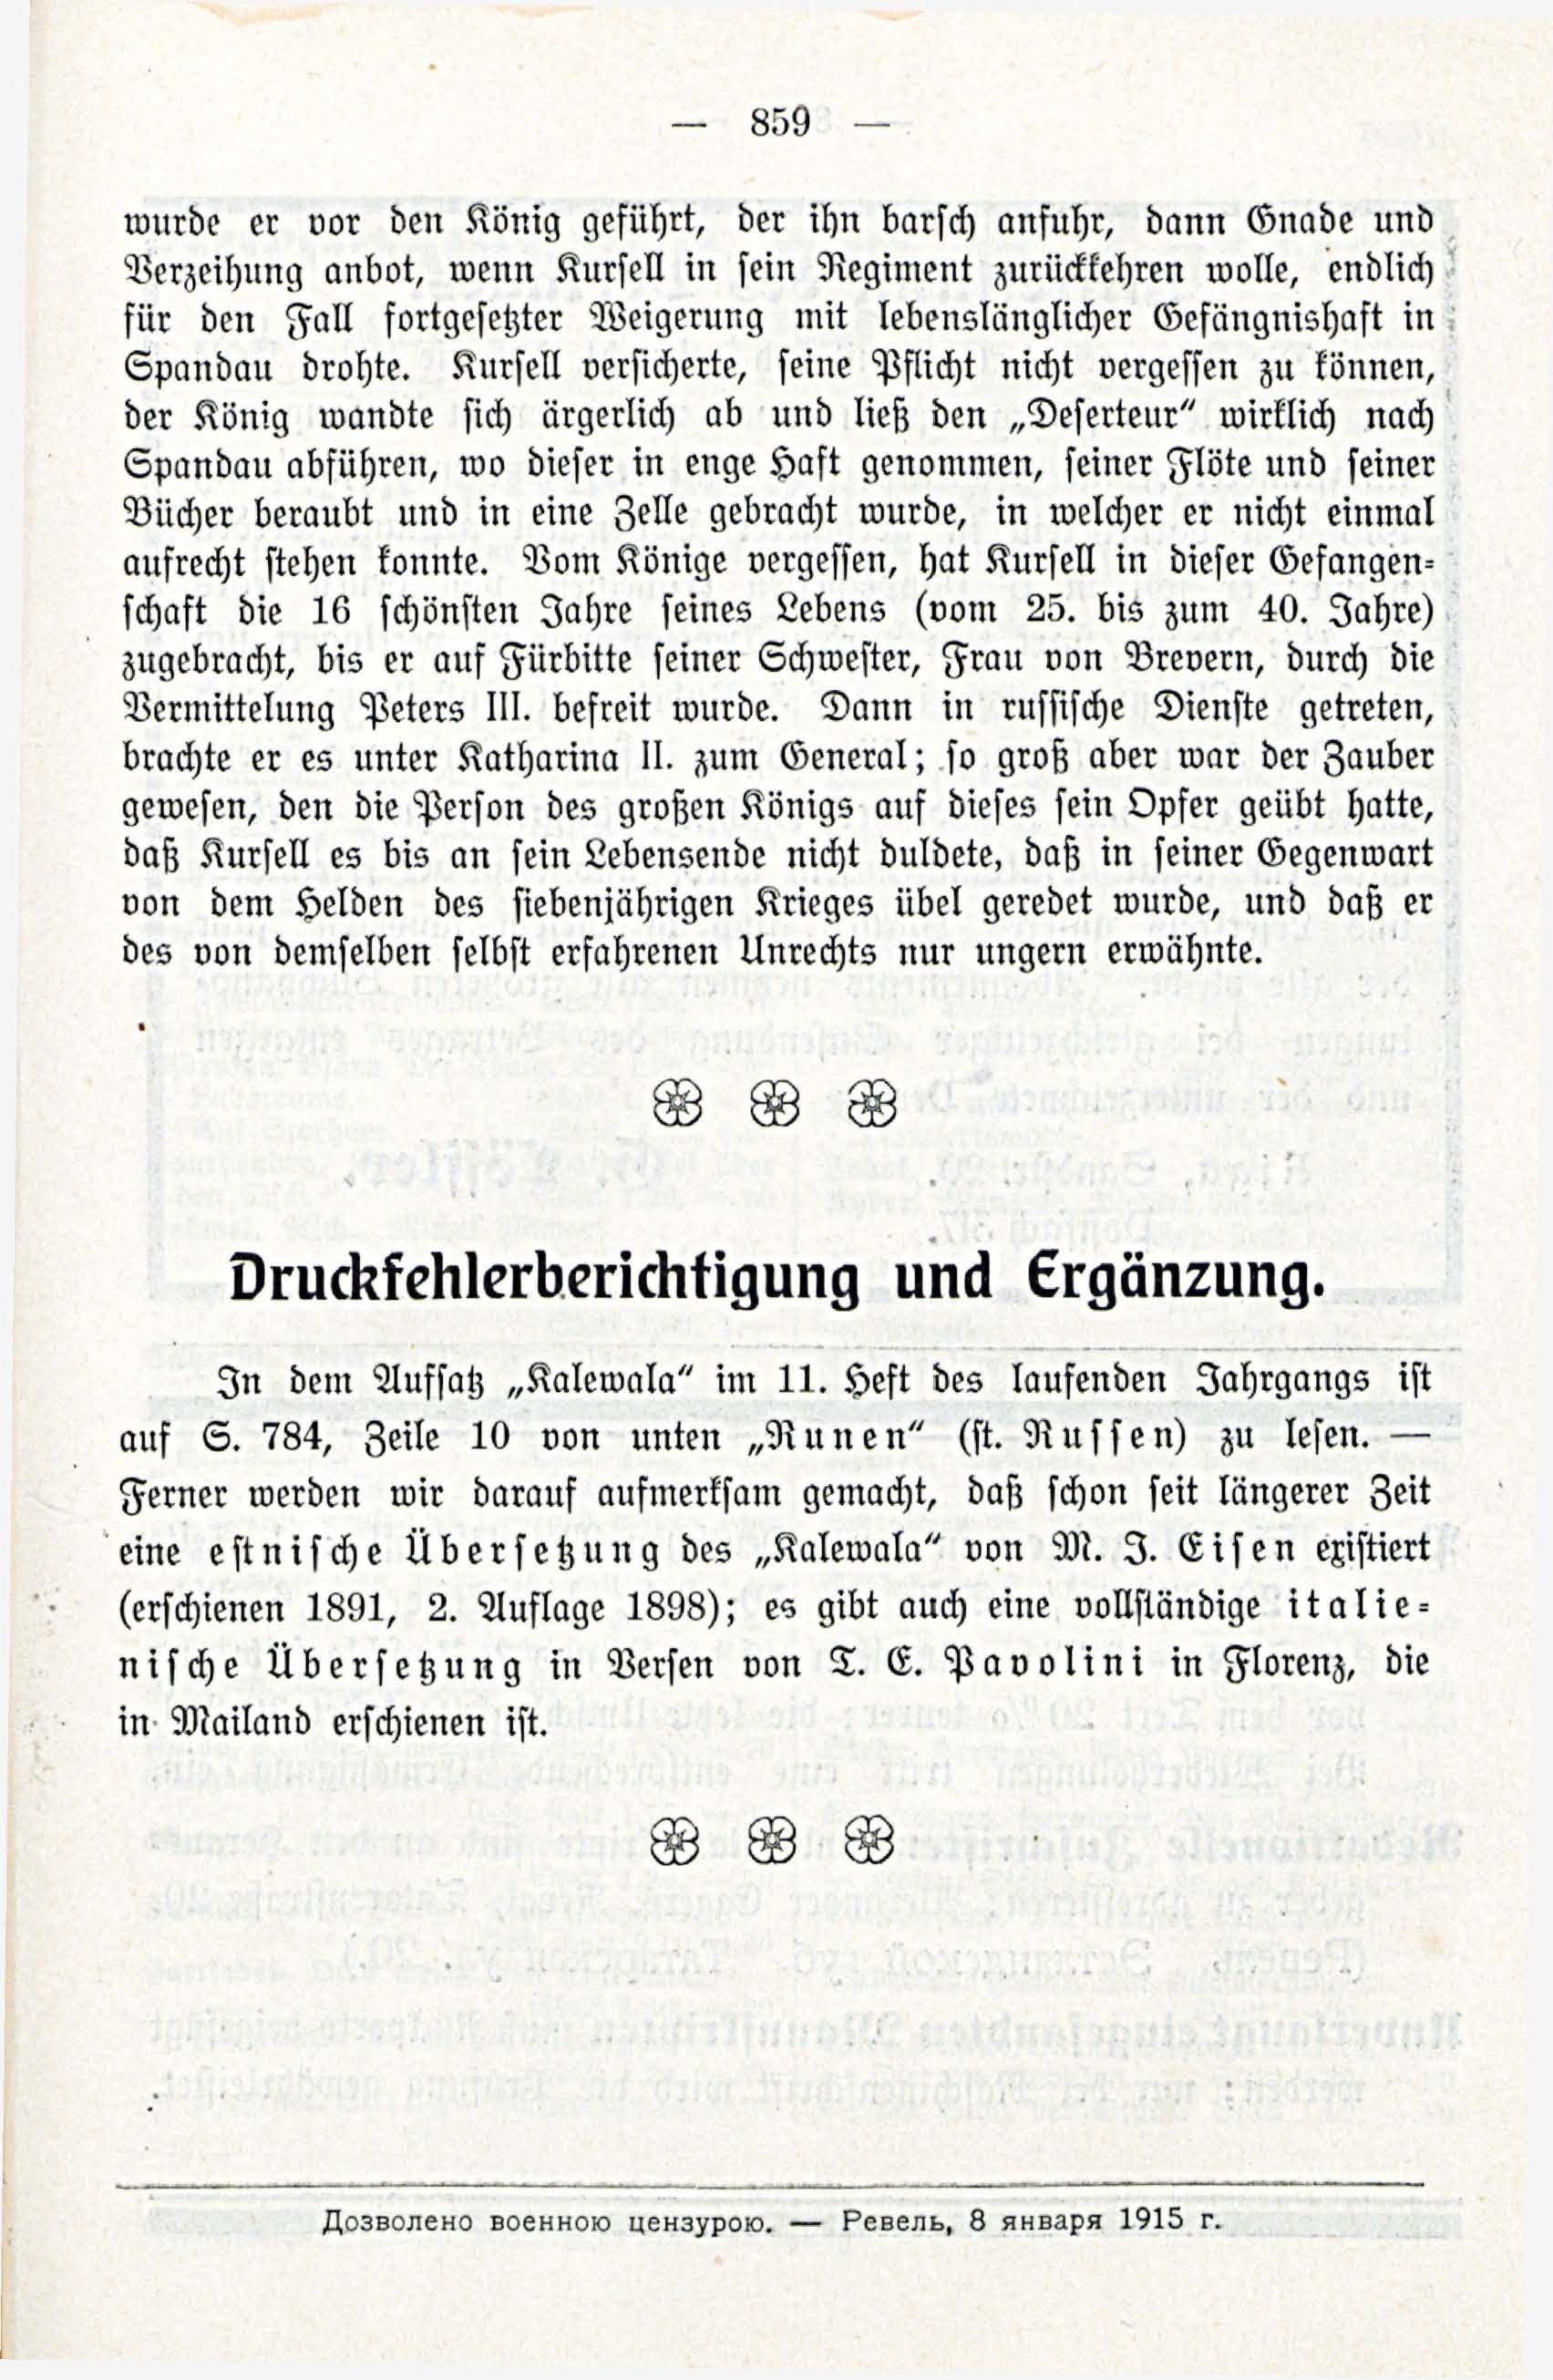 Deutsche Monatsschrift für Russland [3/12] (1914) | 75. (859) Main body of text